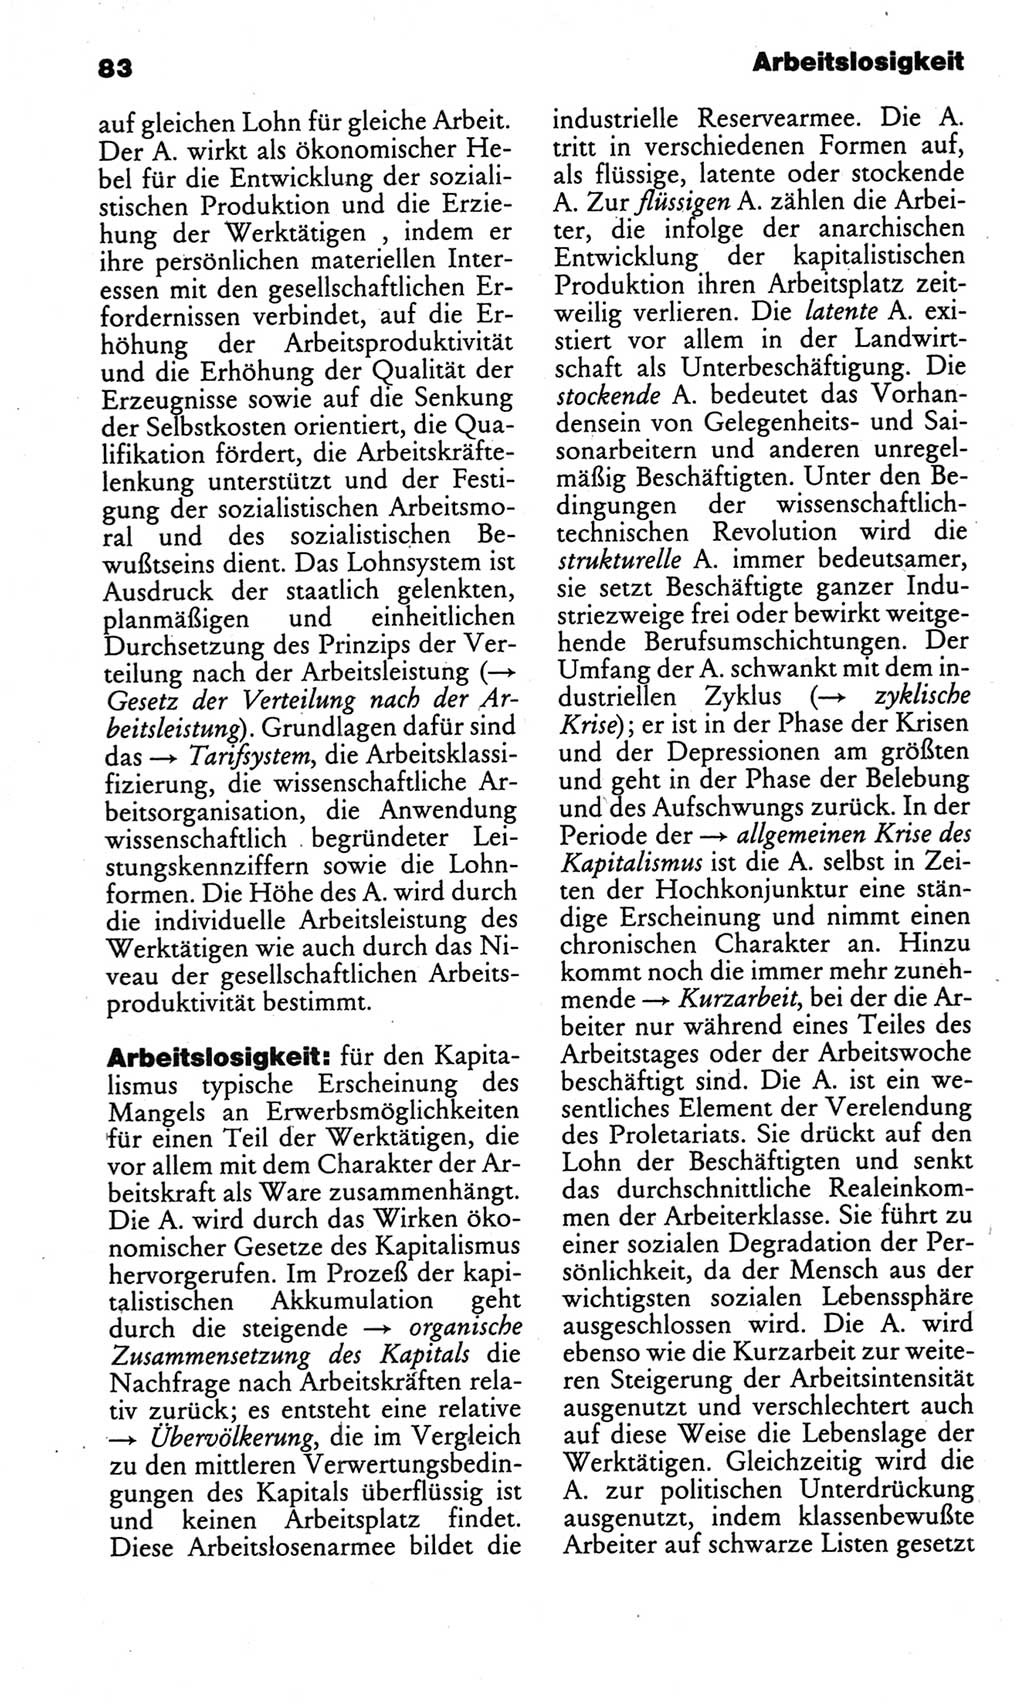 Kleines politisches Wörterbuch [Deutsche Demokratische Republik (DDR)] 1986, Seite 83 (Kl. pol. Wb. DDR 1986, S. 83)